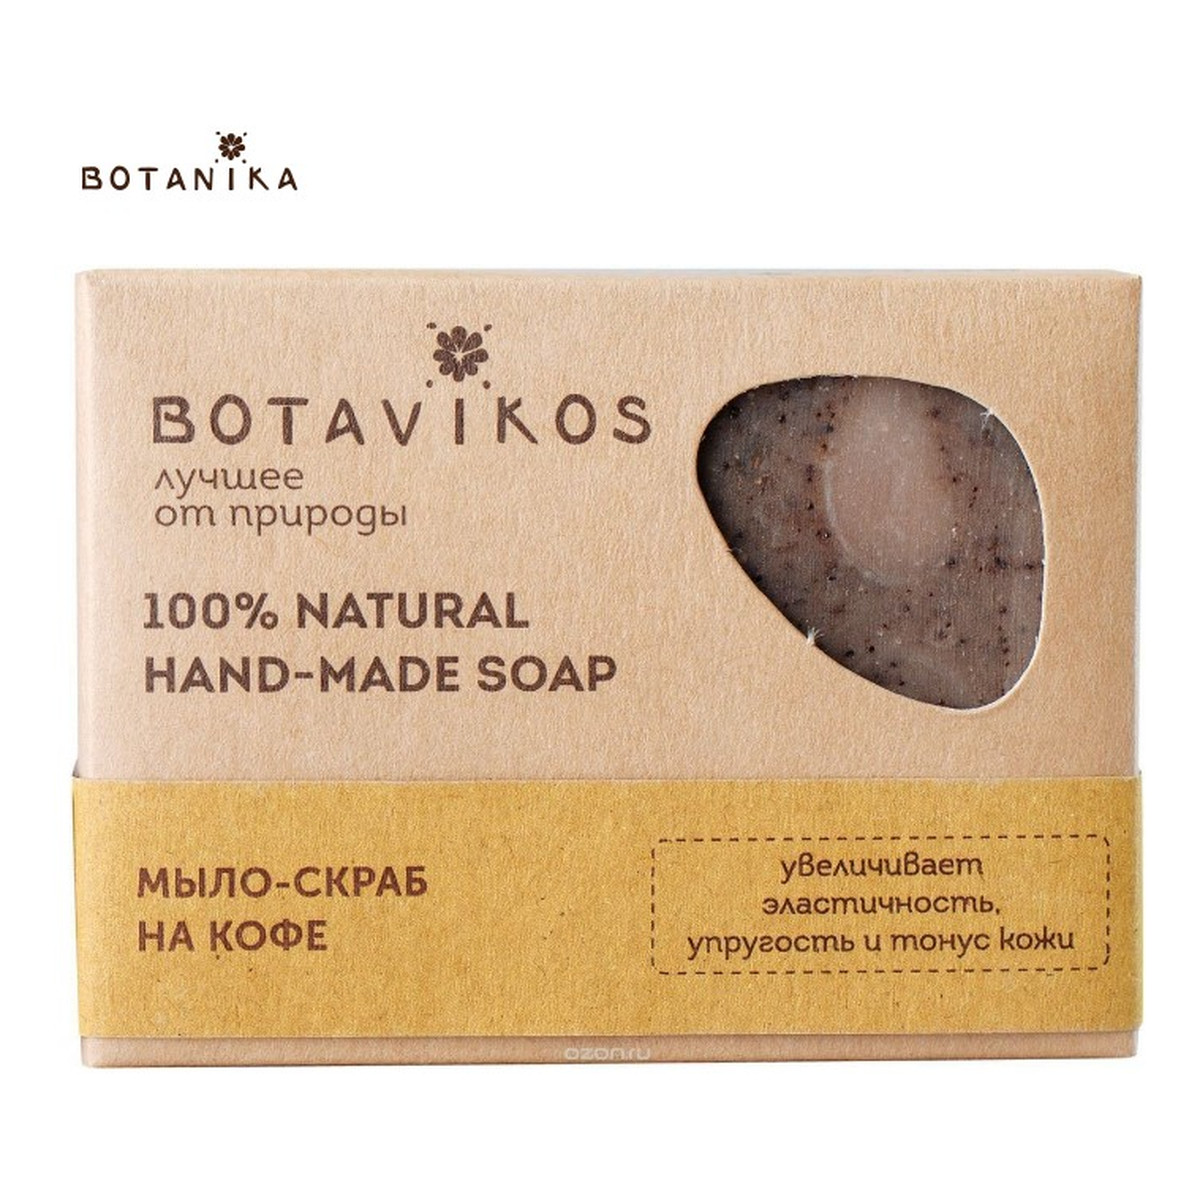 Botanika BOTAVIKOS Naturalne ręcznie robione mydło-peeling Kawowy 100g